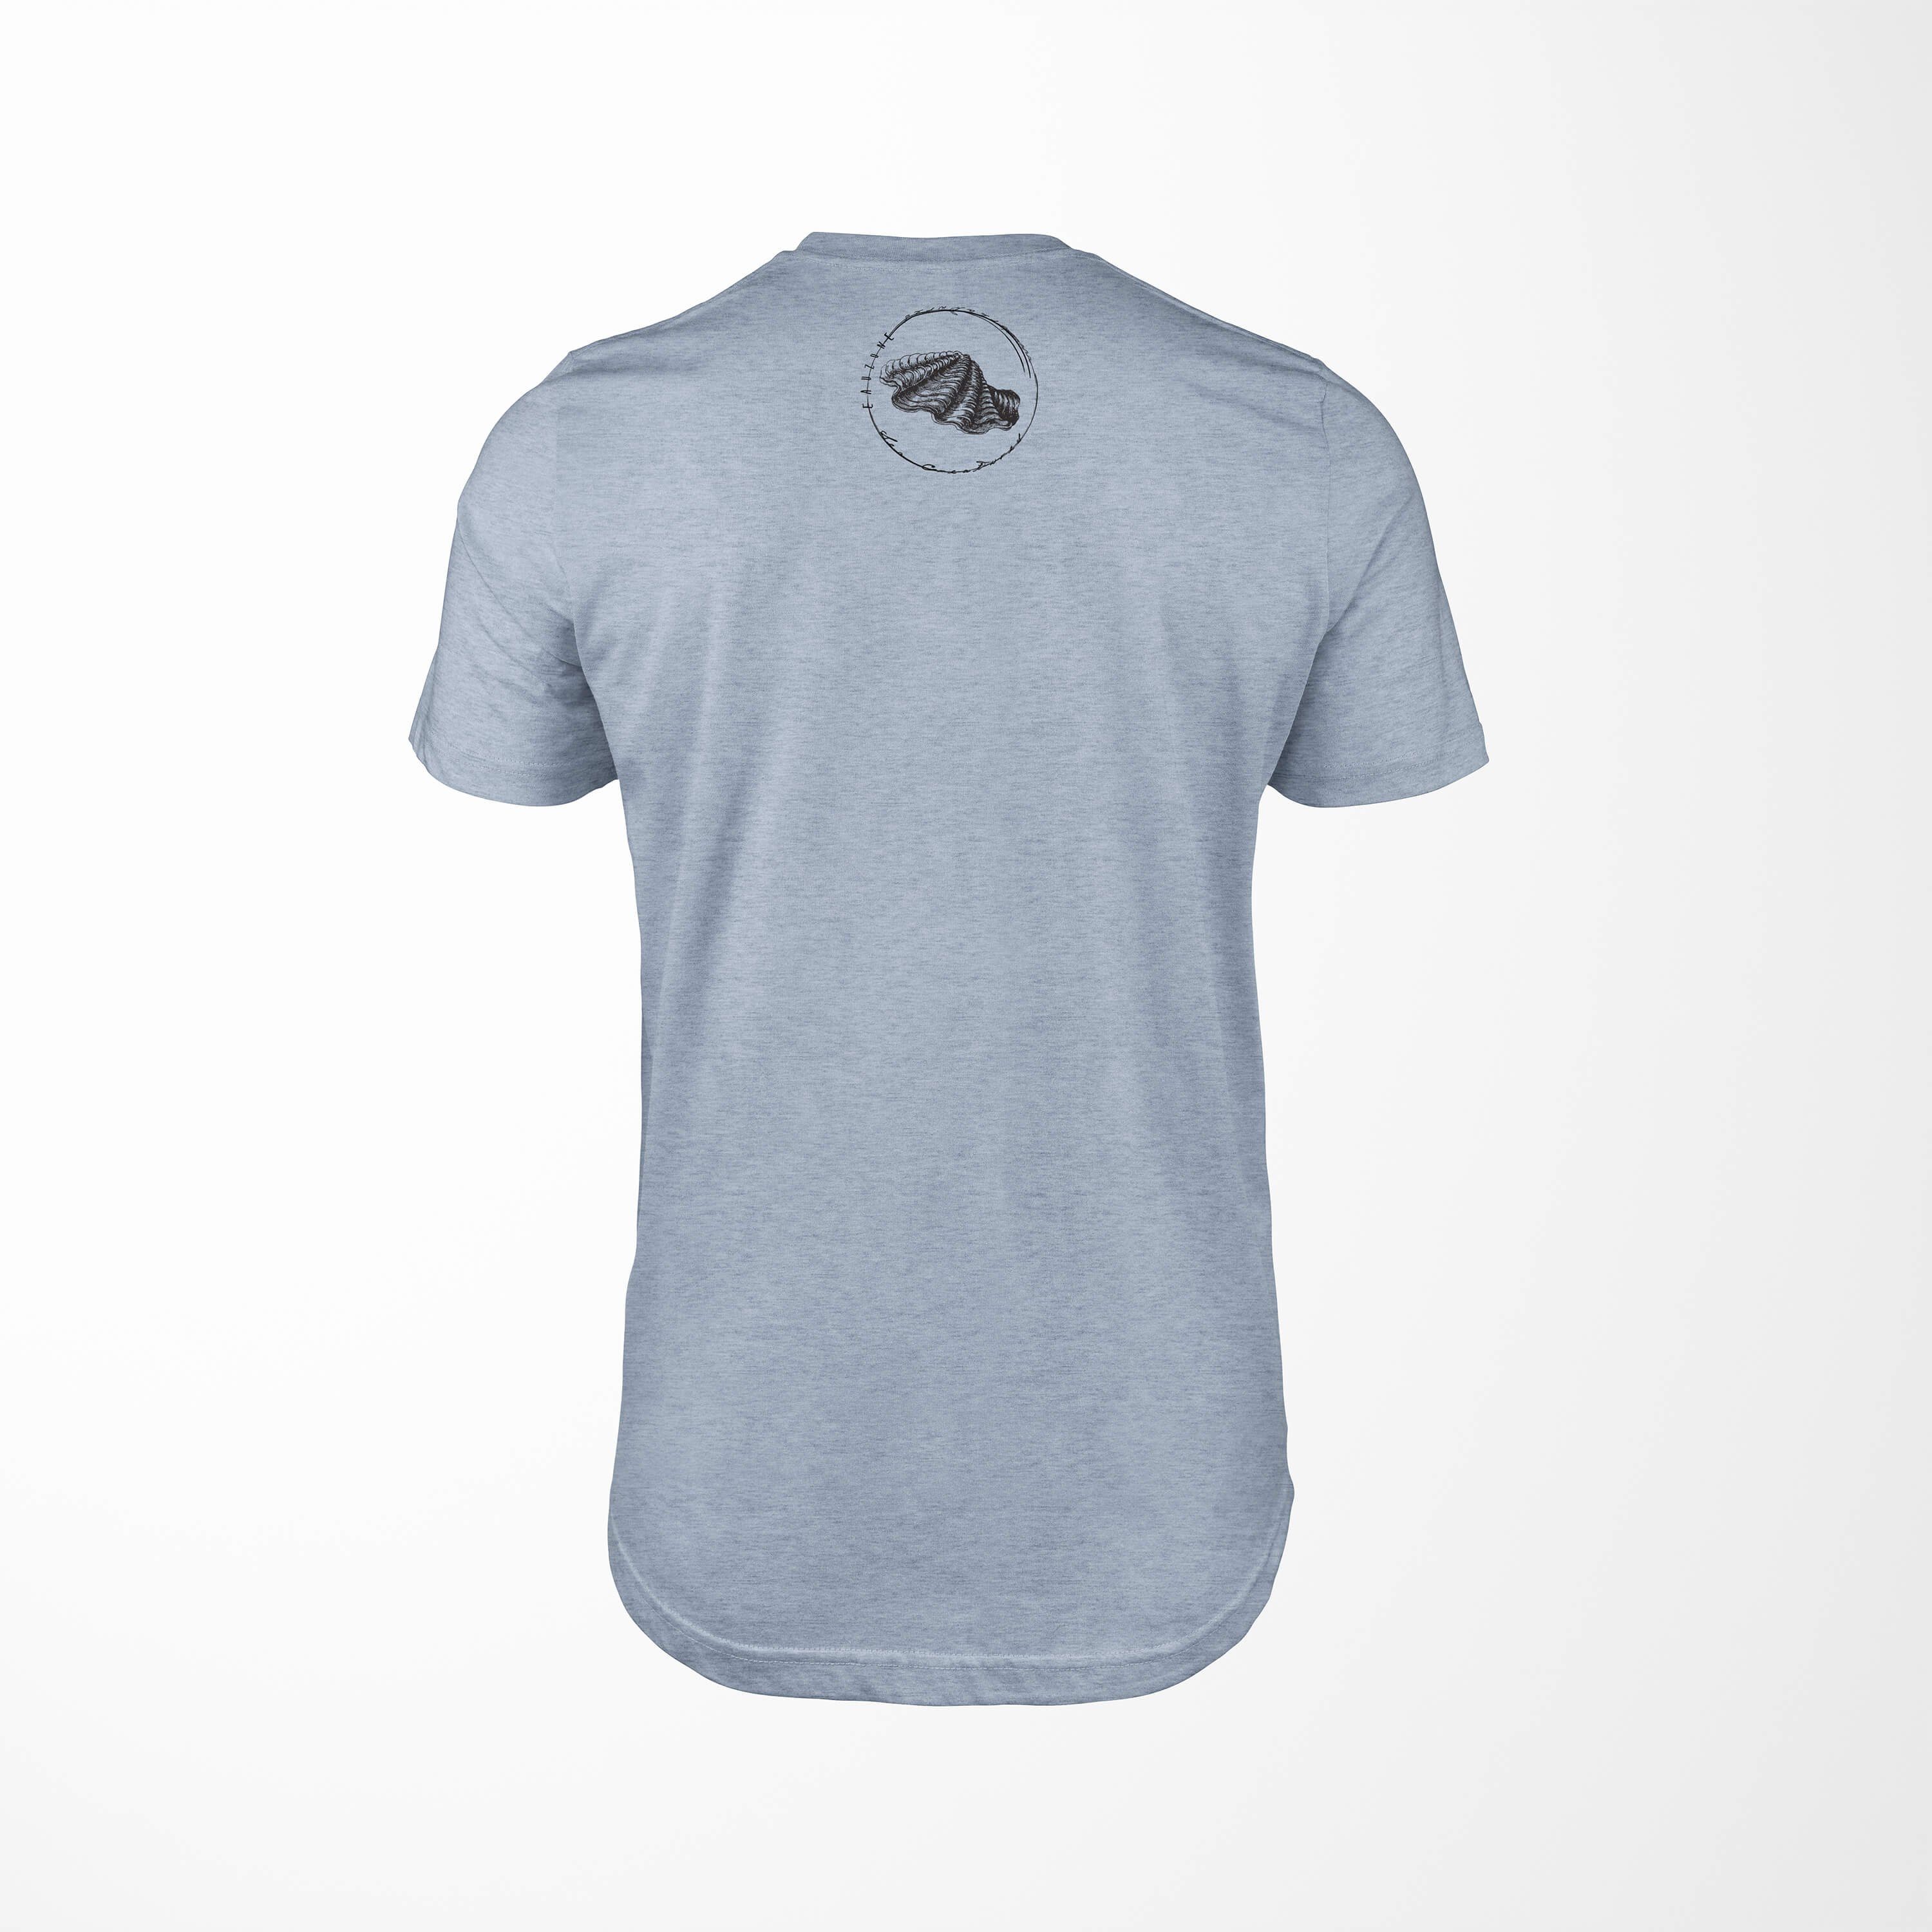 Tiefsee - Fische T-Shirt / Schnitt Struktur T-Shirt 088 und Sinus sportlicher Denim Stonewash feine Serie: Art Sea Sea Creatures,